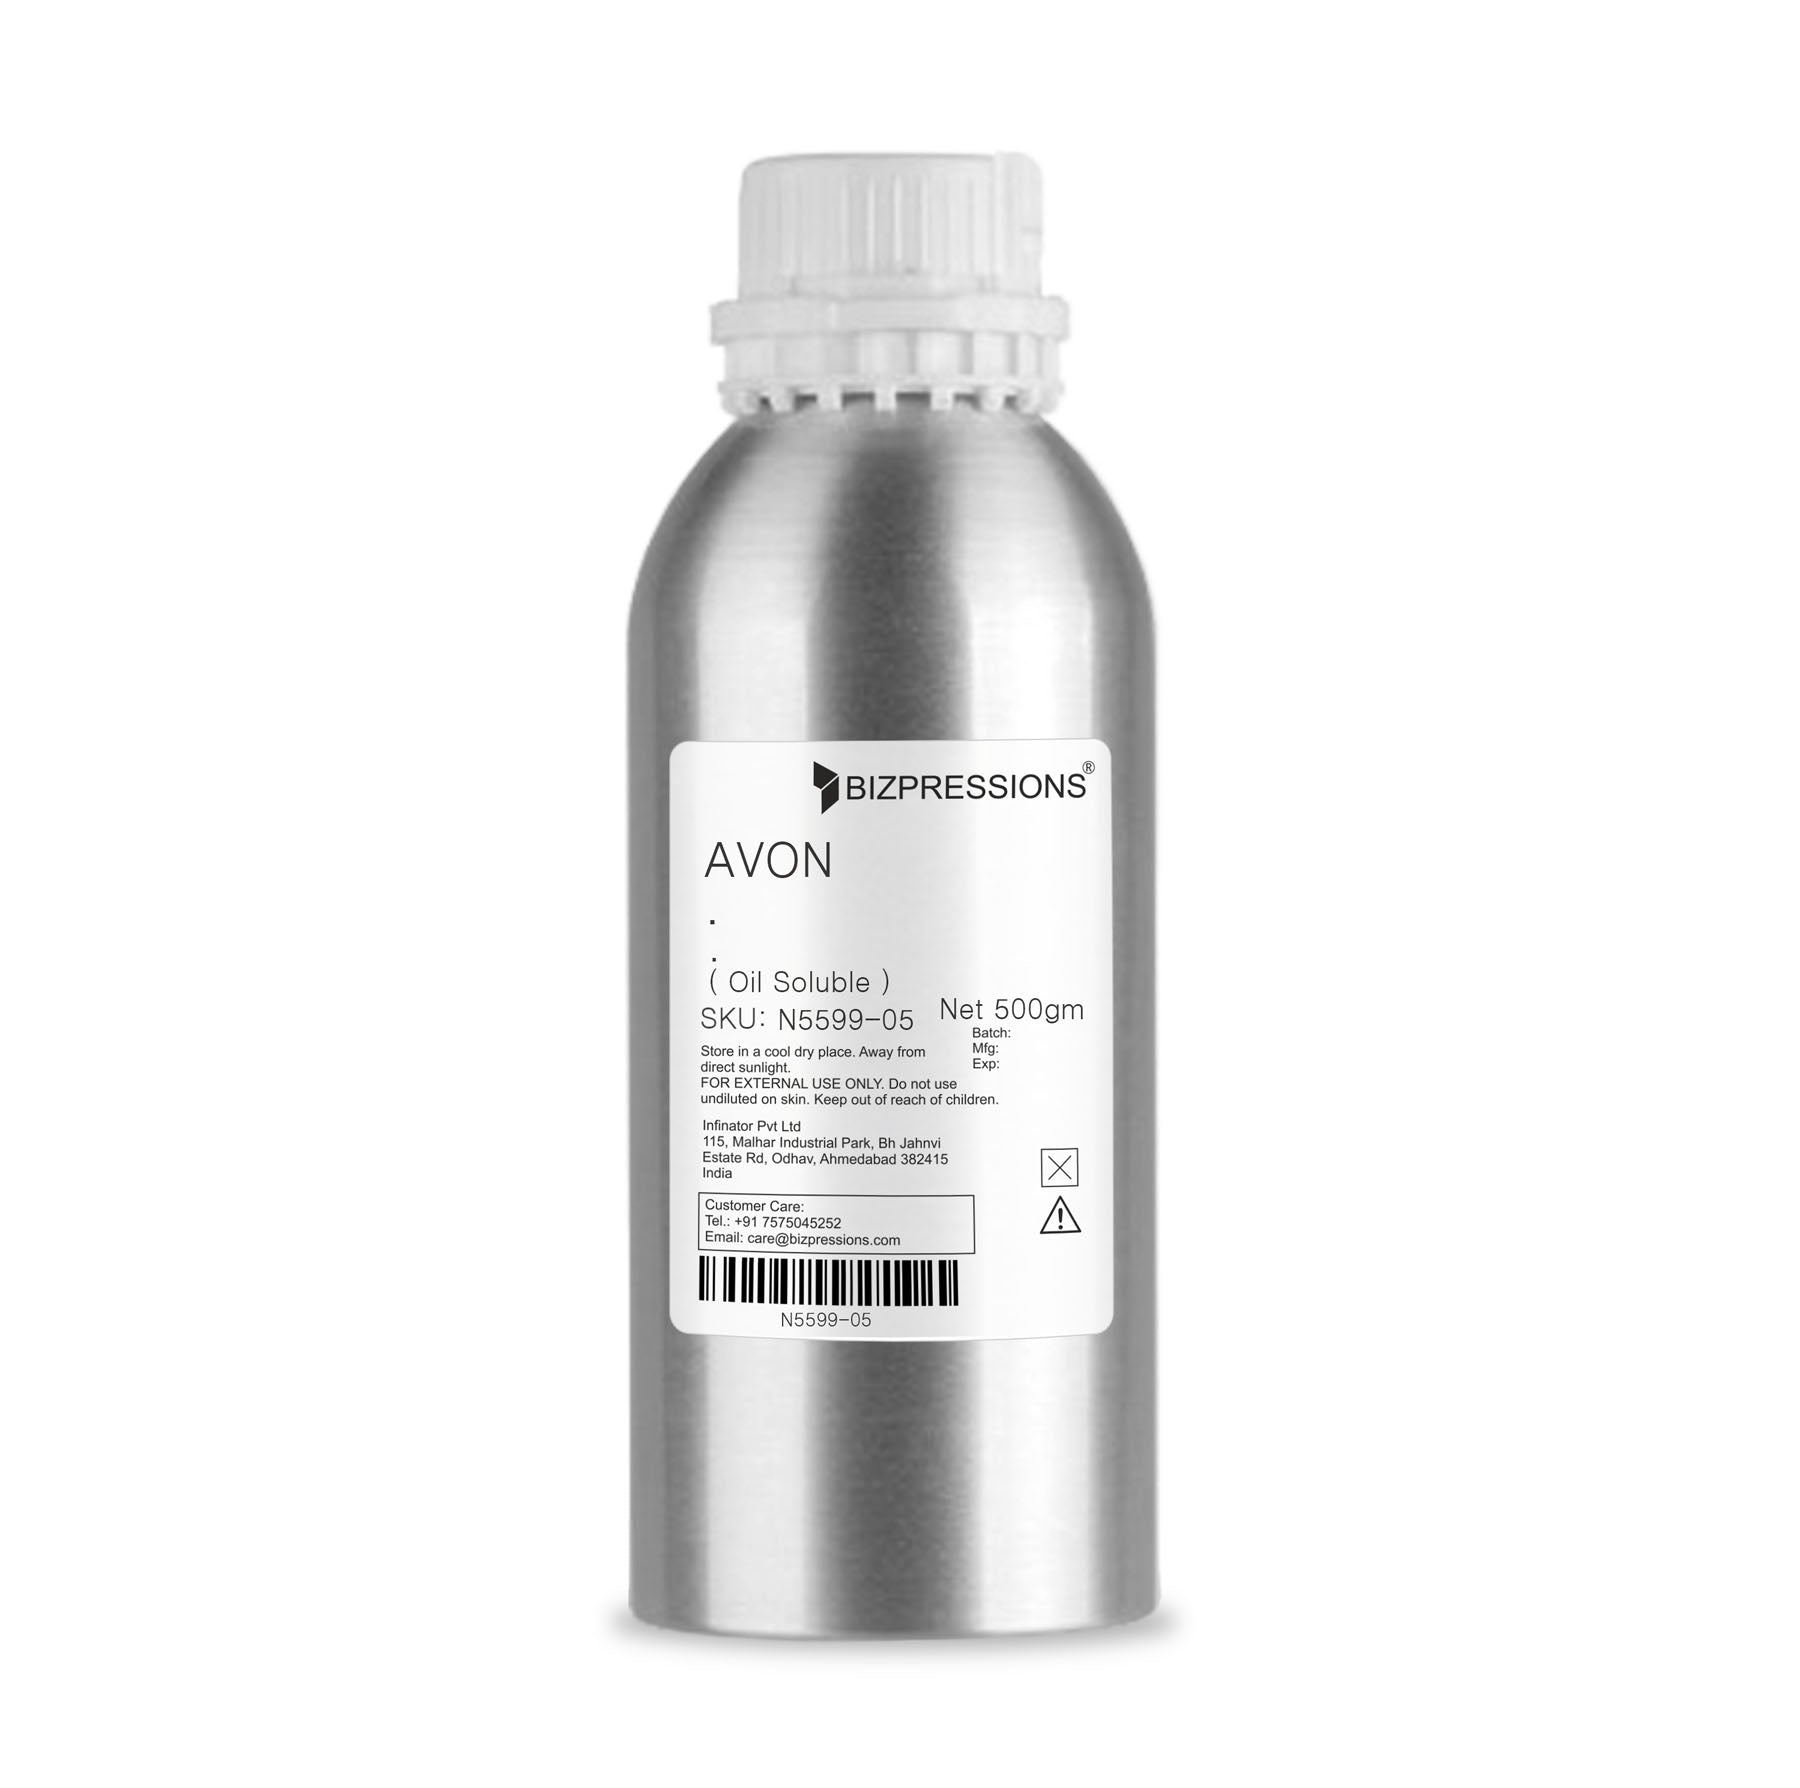 AVON - Fragrance ( Oil Soluble ) - 500 gm